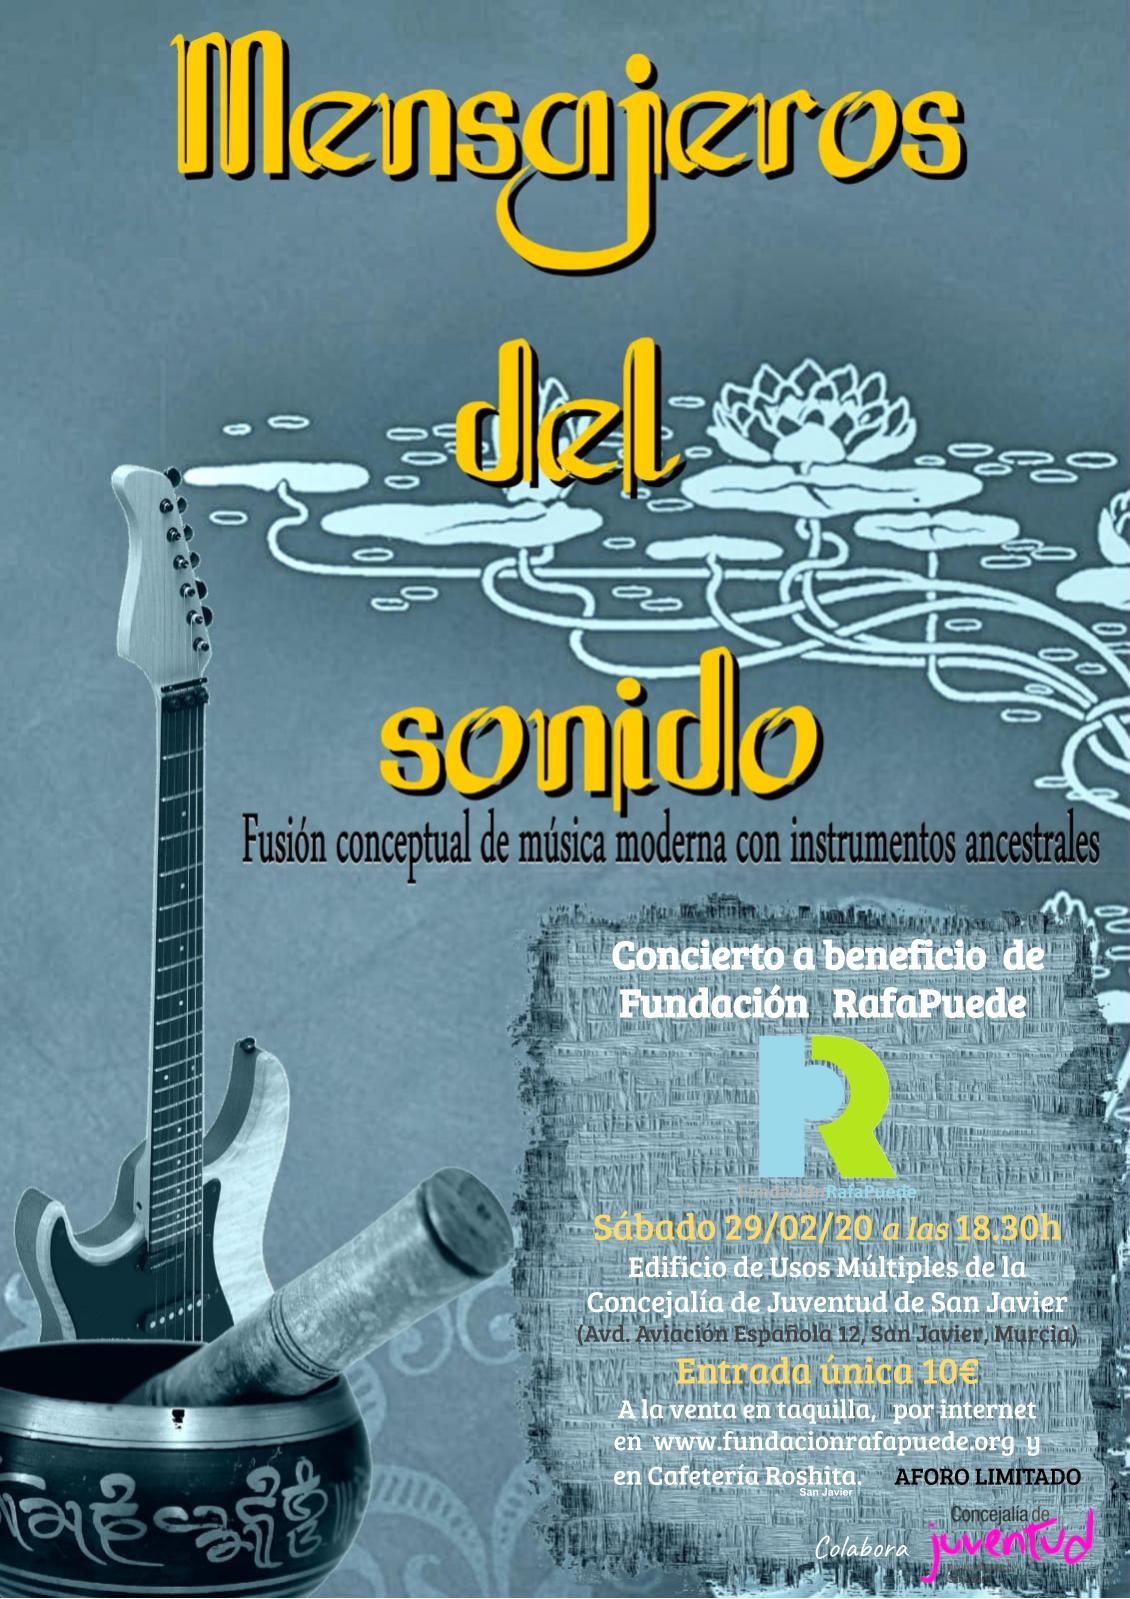 29/02/20 Sábado a las 18:30 - Concierto benéfico de Mensajeros del Sonido a favor de la Fundación Rafa Puede en San Javier(Murcia).